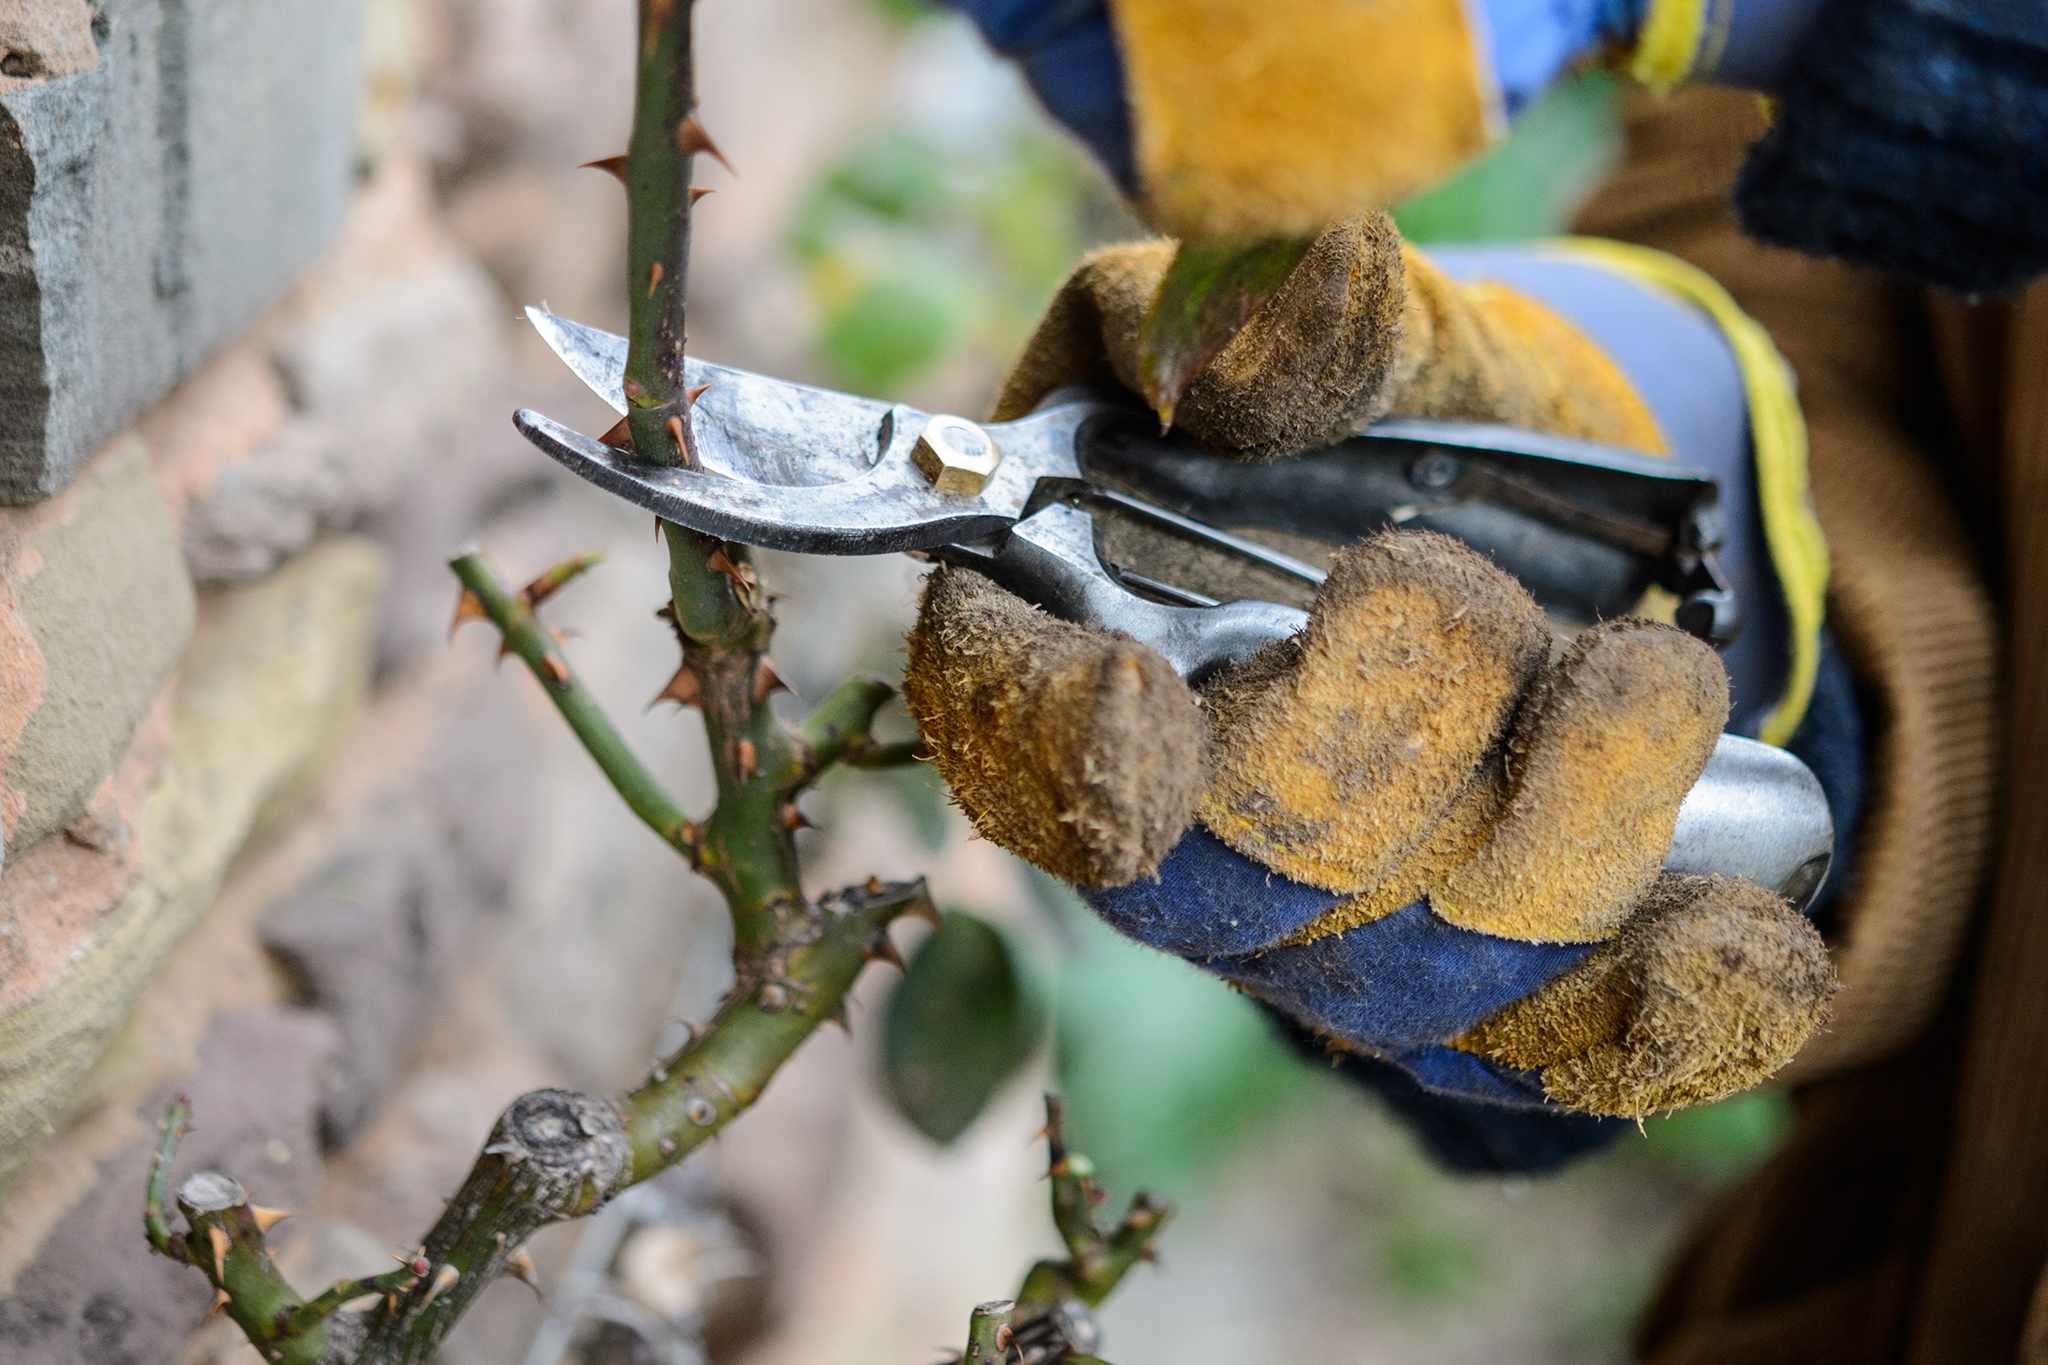 Pruning a climbing rose sideshoot